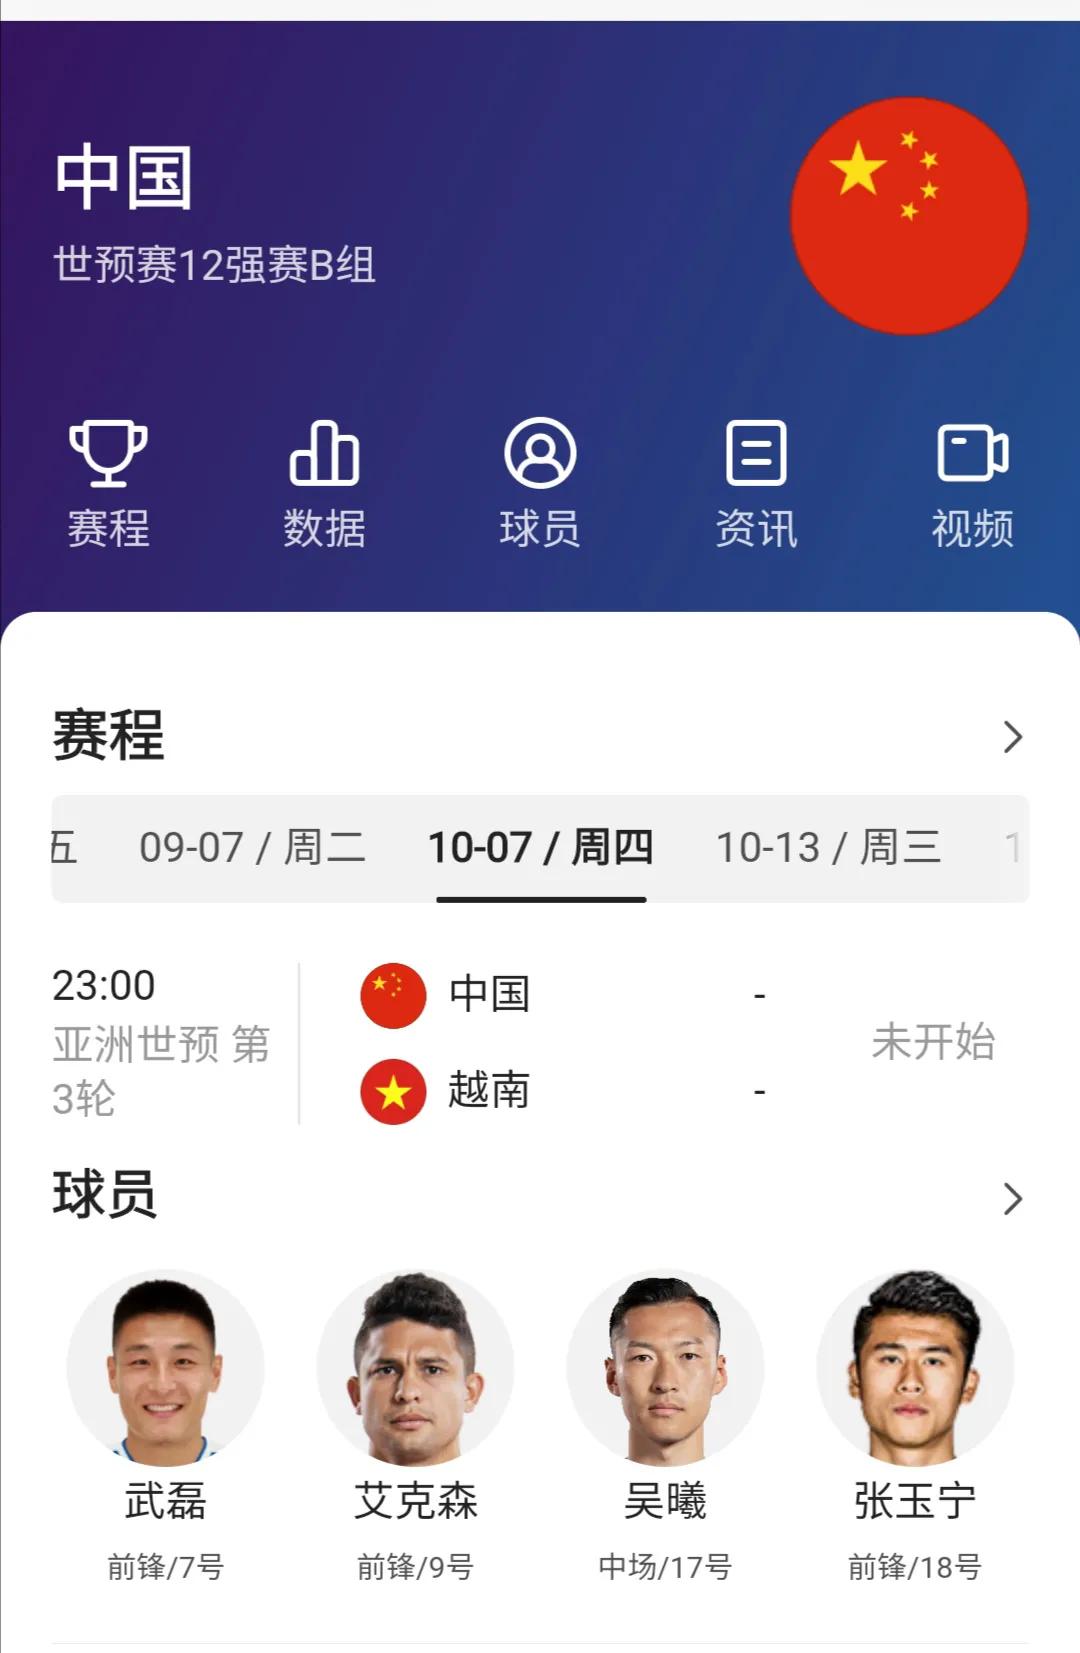 #世界杯预选赛亚洲12强赛：中国-越南，2021.10.07开打#